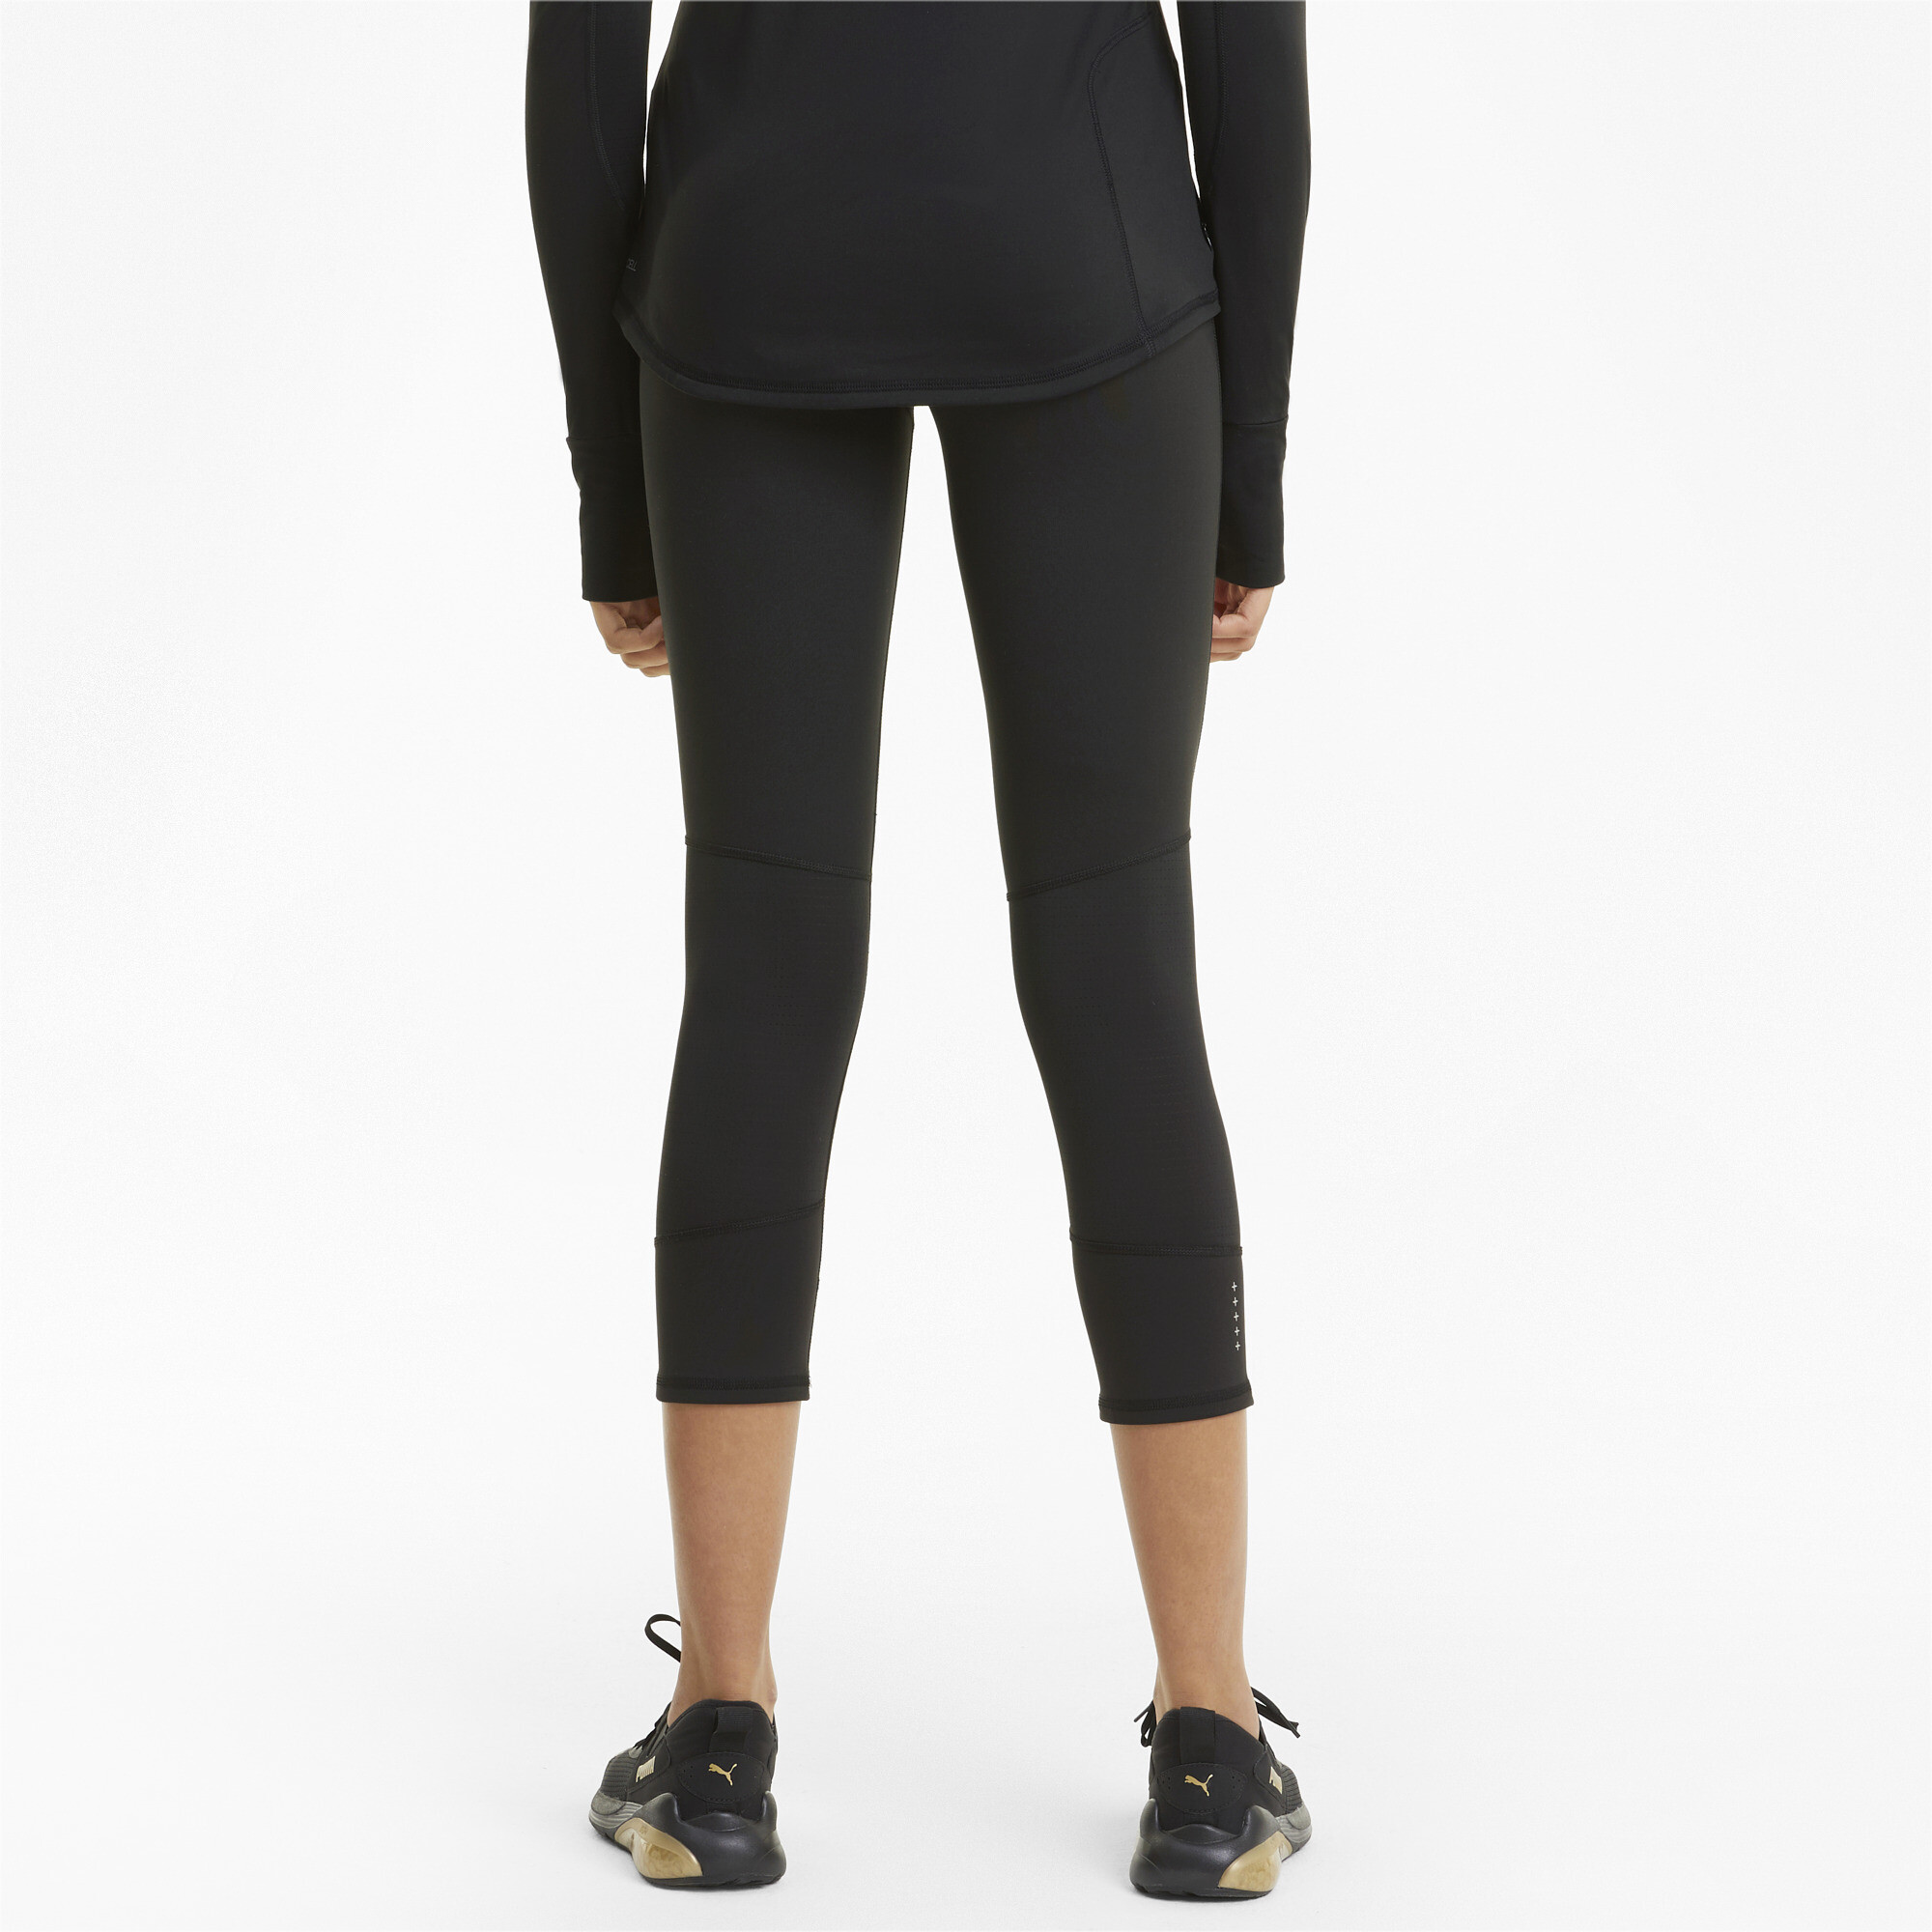 Women's PUMA Favourite 3/4 Running Leggings In Black, Size Medium